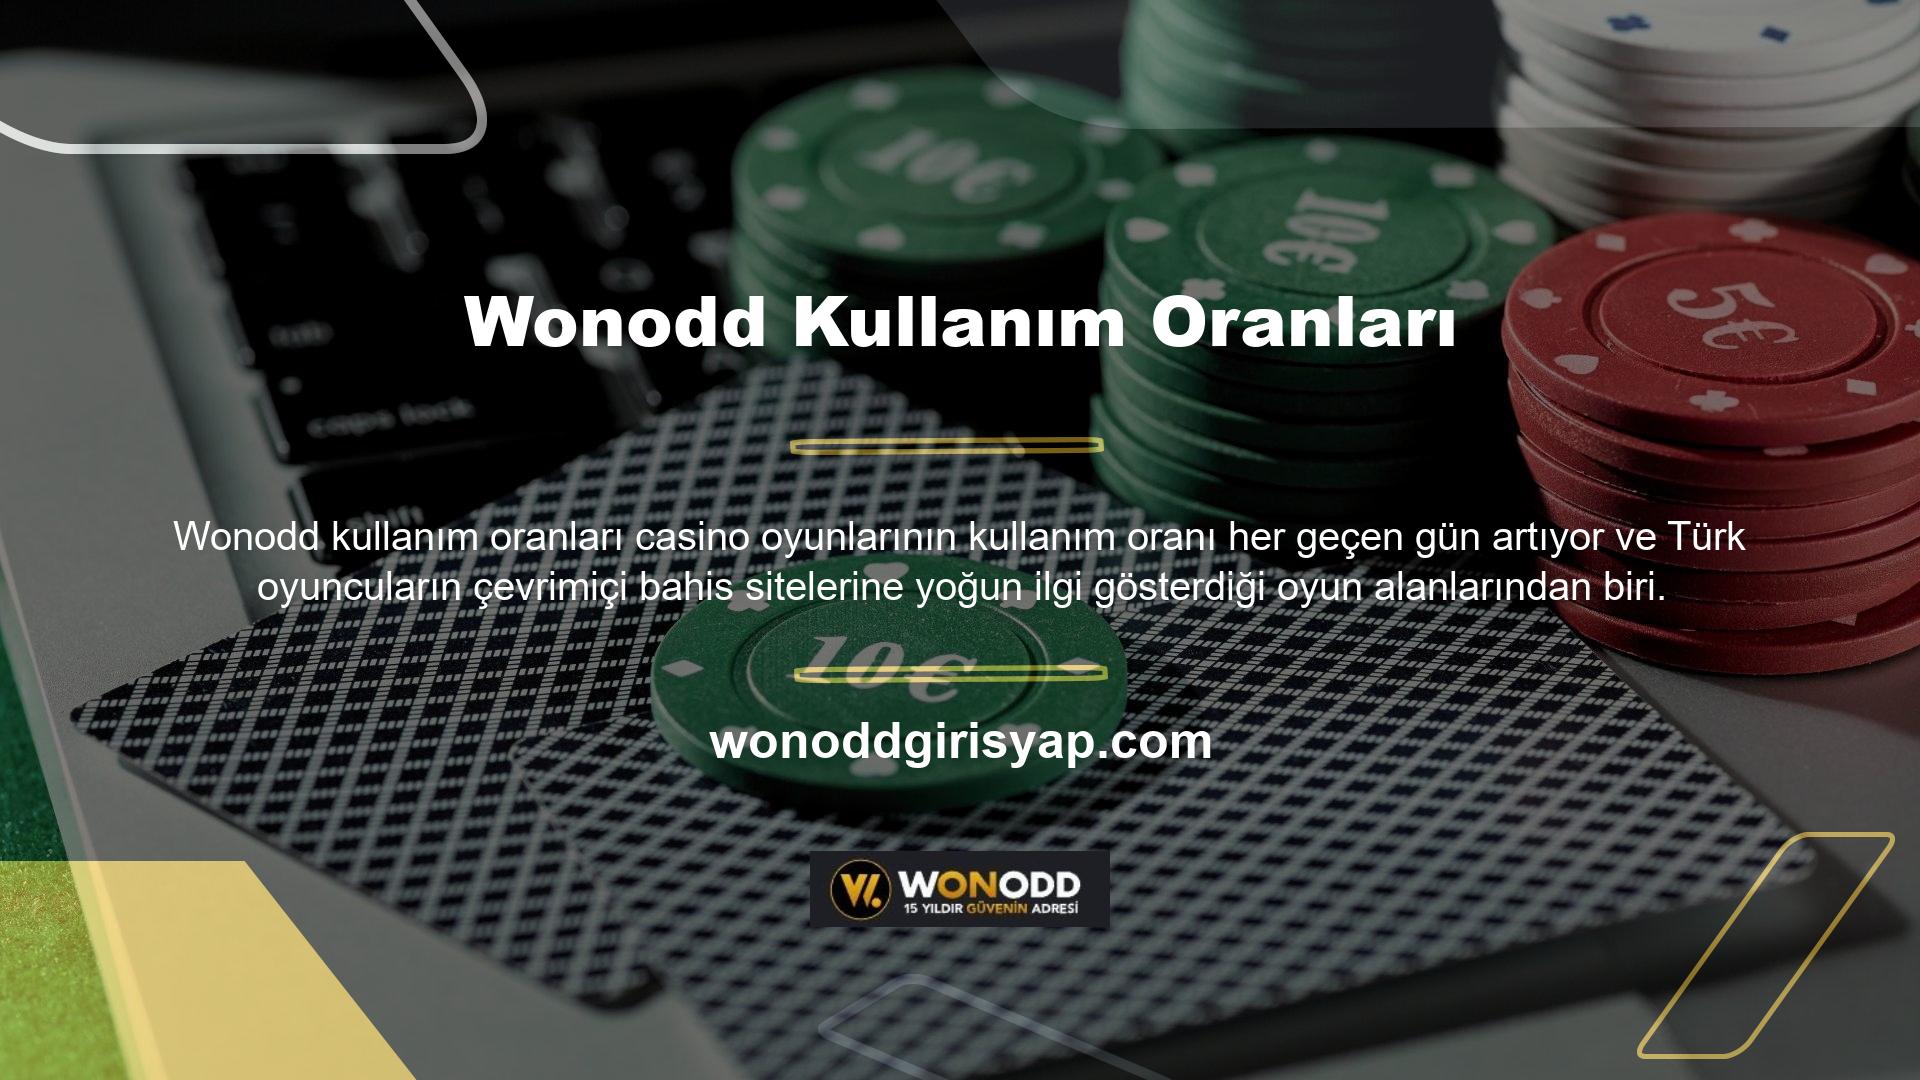 Türk oyuncuların ne istediğini anlamak için Wonodd web sitesi, Türk oyunculara çeşitli canlı casino oyun geliştiricileri tarafından sunulan en karlı ve ilgi çekici oyunları sunmaktadır